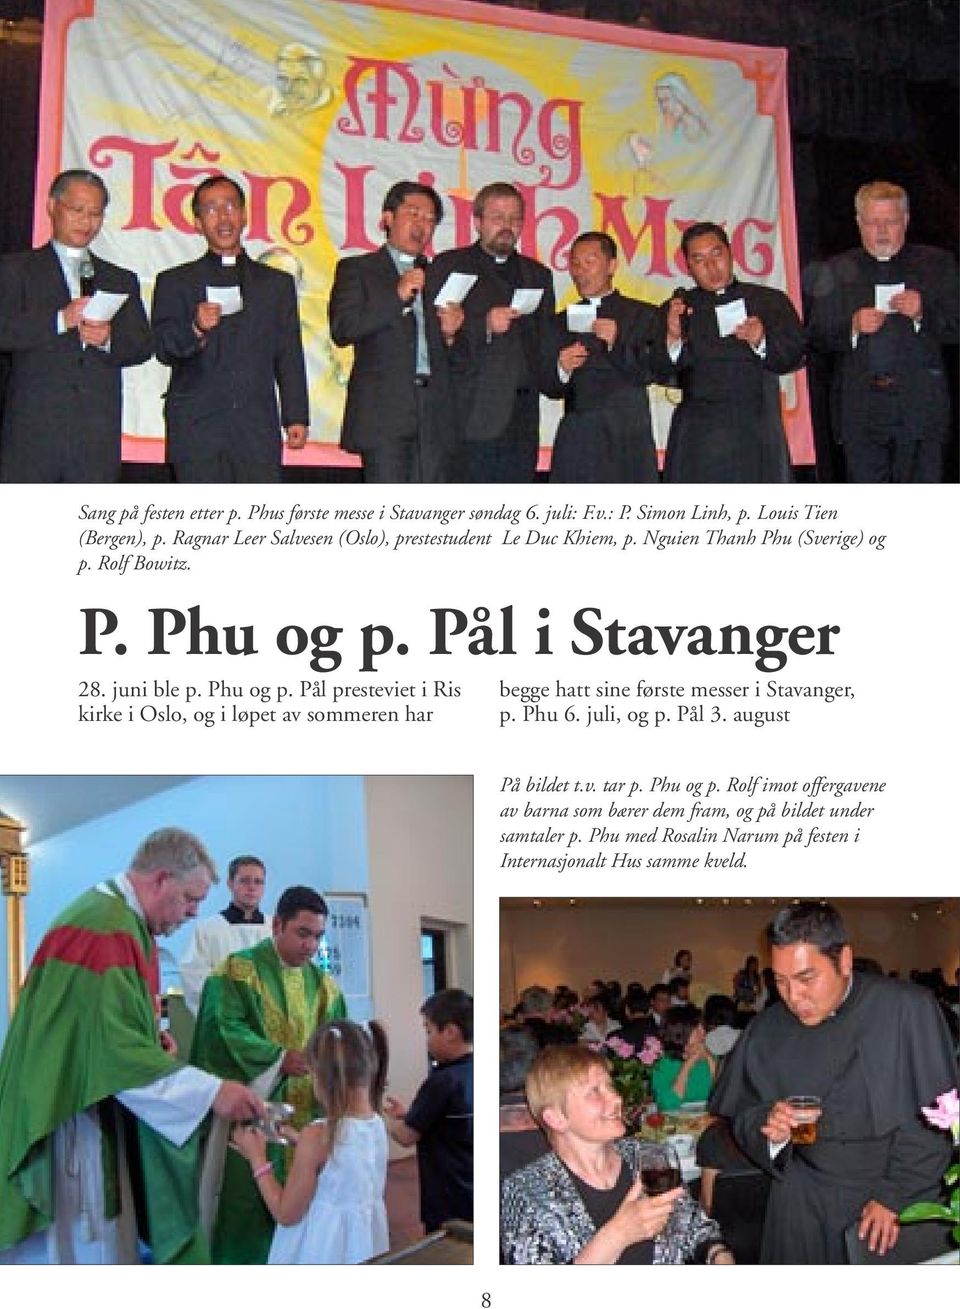 Phu og p. Pål presteviet i Ris kirke i Oslo, og i løpet av sommeren har begge hatt sine første messer i Stavanger, p. Phu 6. juli, og p. Pål 3.